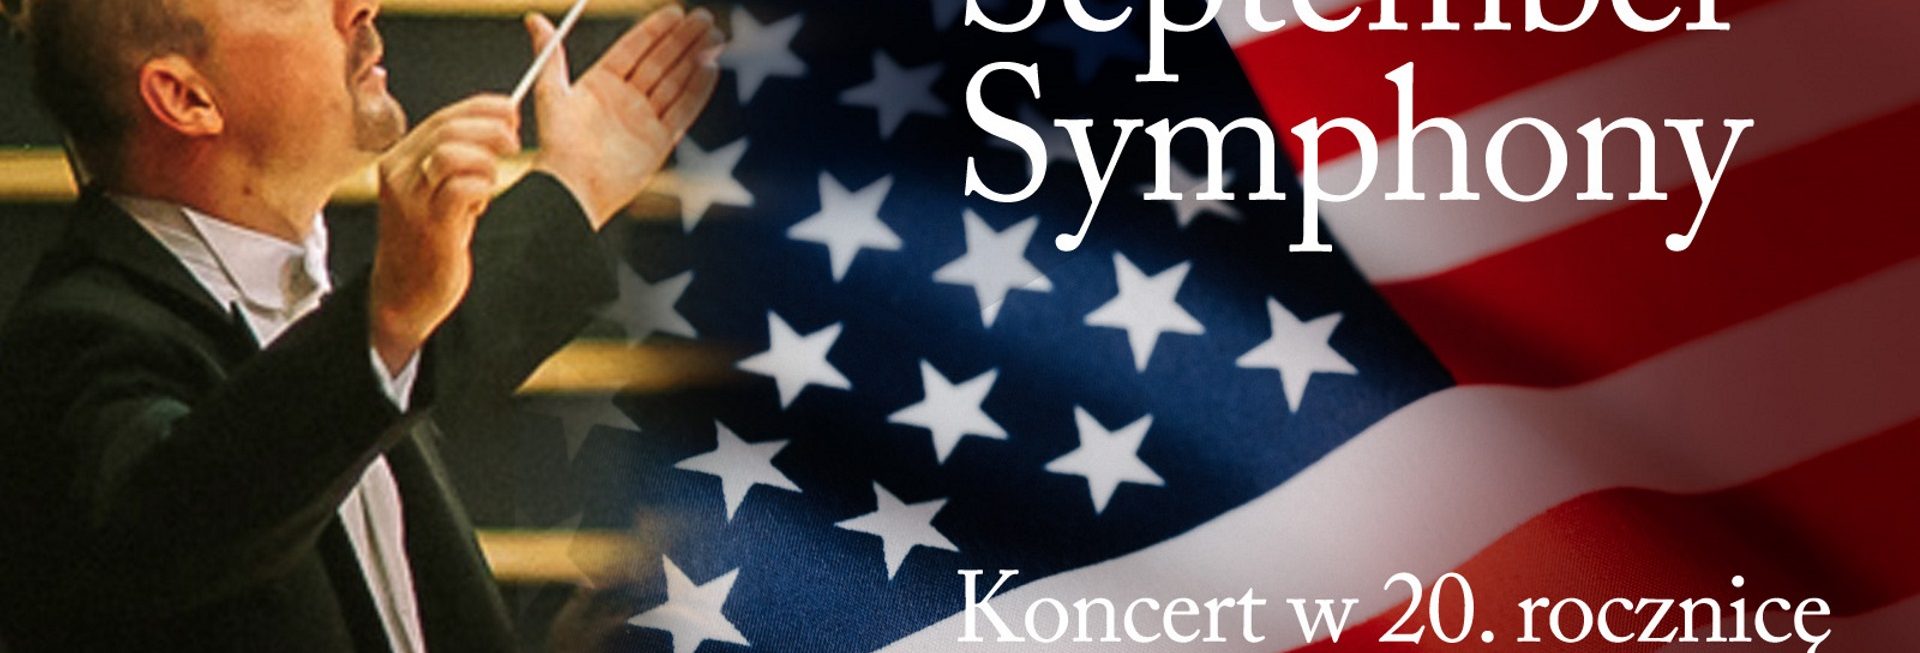 Plakat graficzny zapraszający do Olsztyna na September Symphony – koncert w 20. rocznicę ataku na WTC - Filharmonia Olsztyn 2021. Na plakacie zdjęcie dyrygenta a w tle plakatu zdjęcie flagi amerykańskiej.